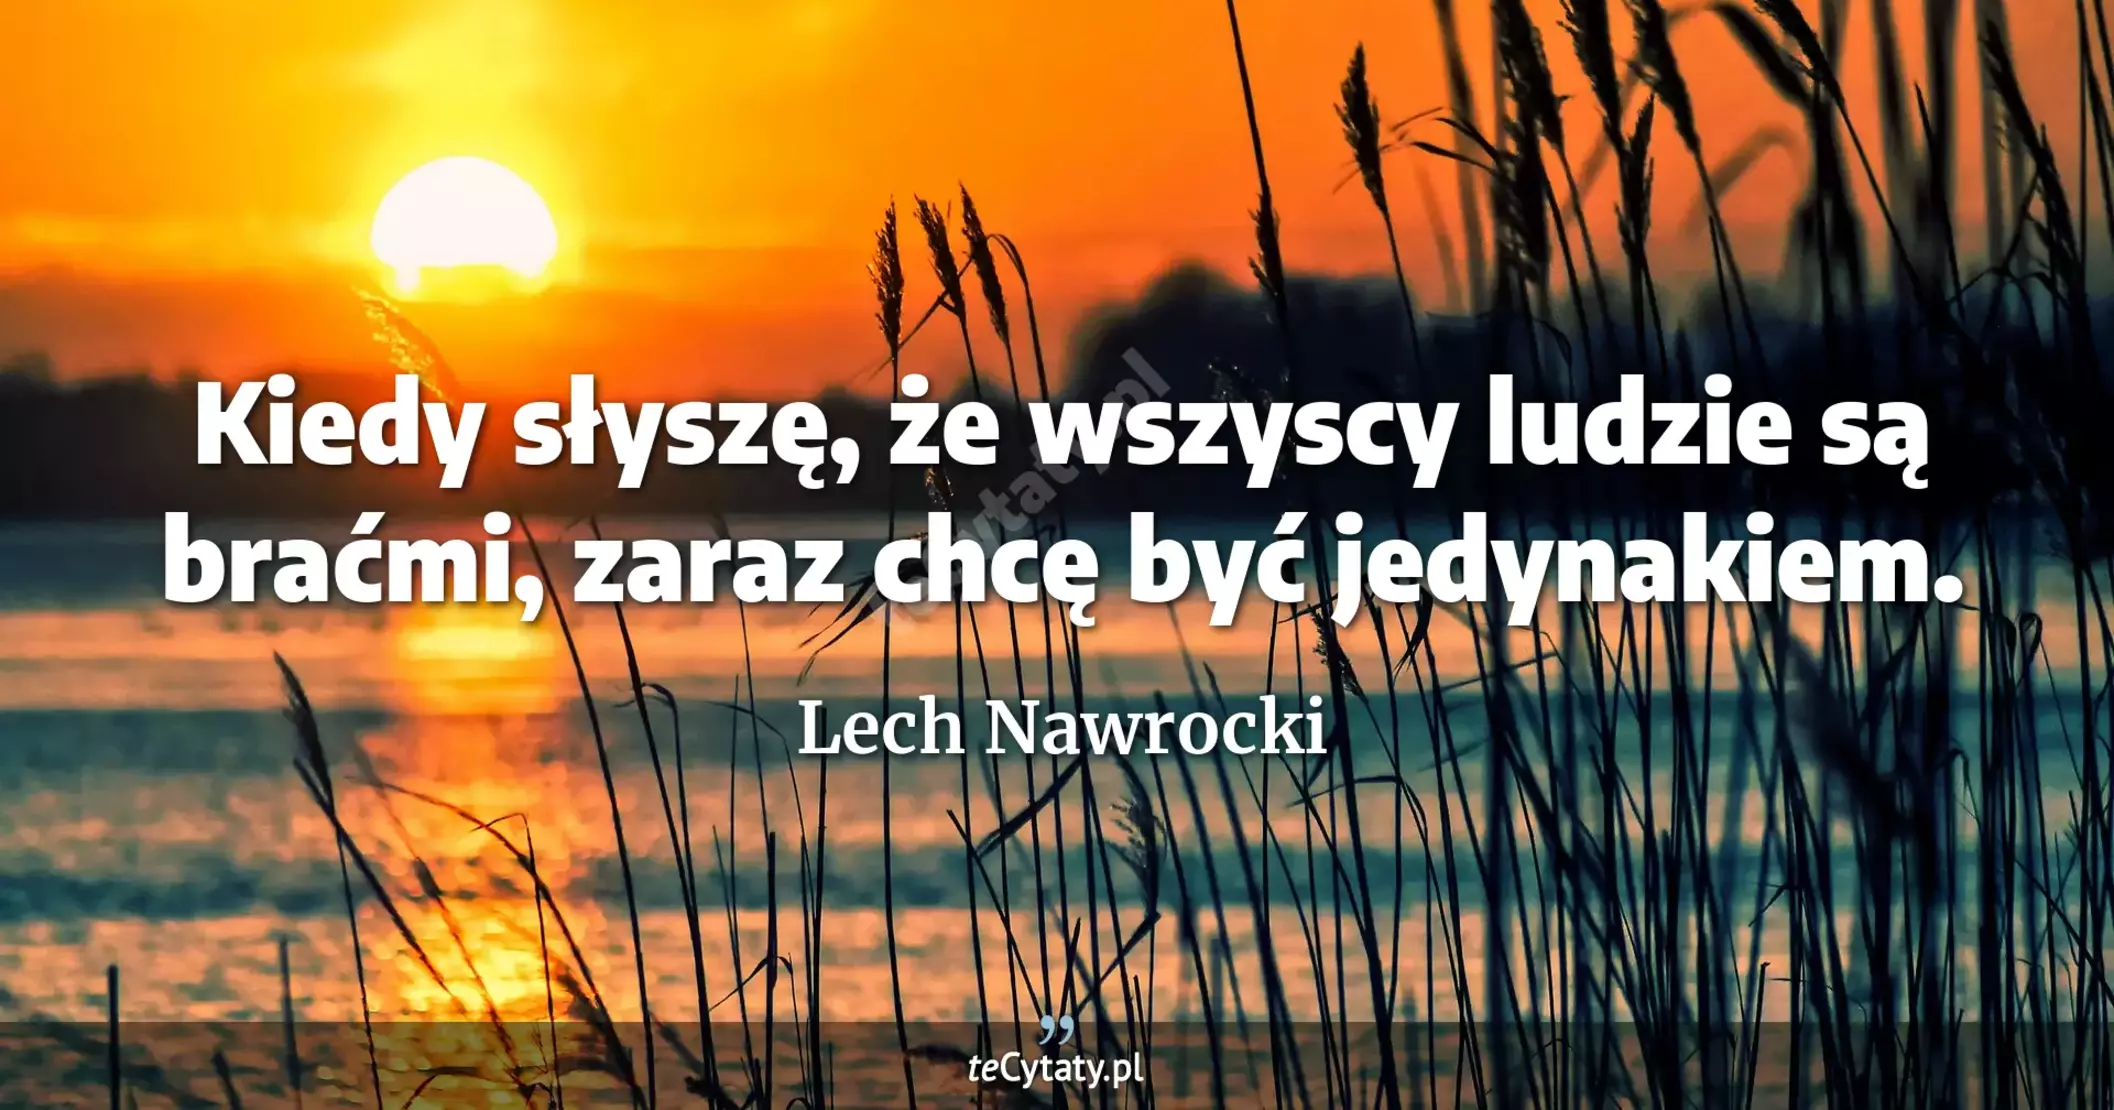 Kiedy słyszę, że wszyscy ludzie są braćmi, zaraz chcę być jedynakiem. - Lech Nawrocki